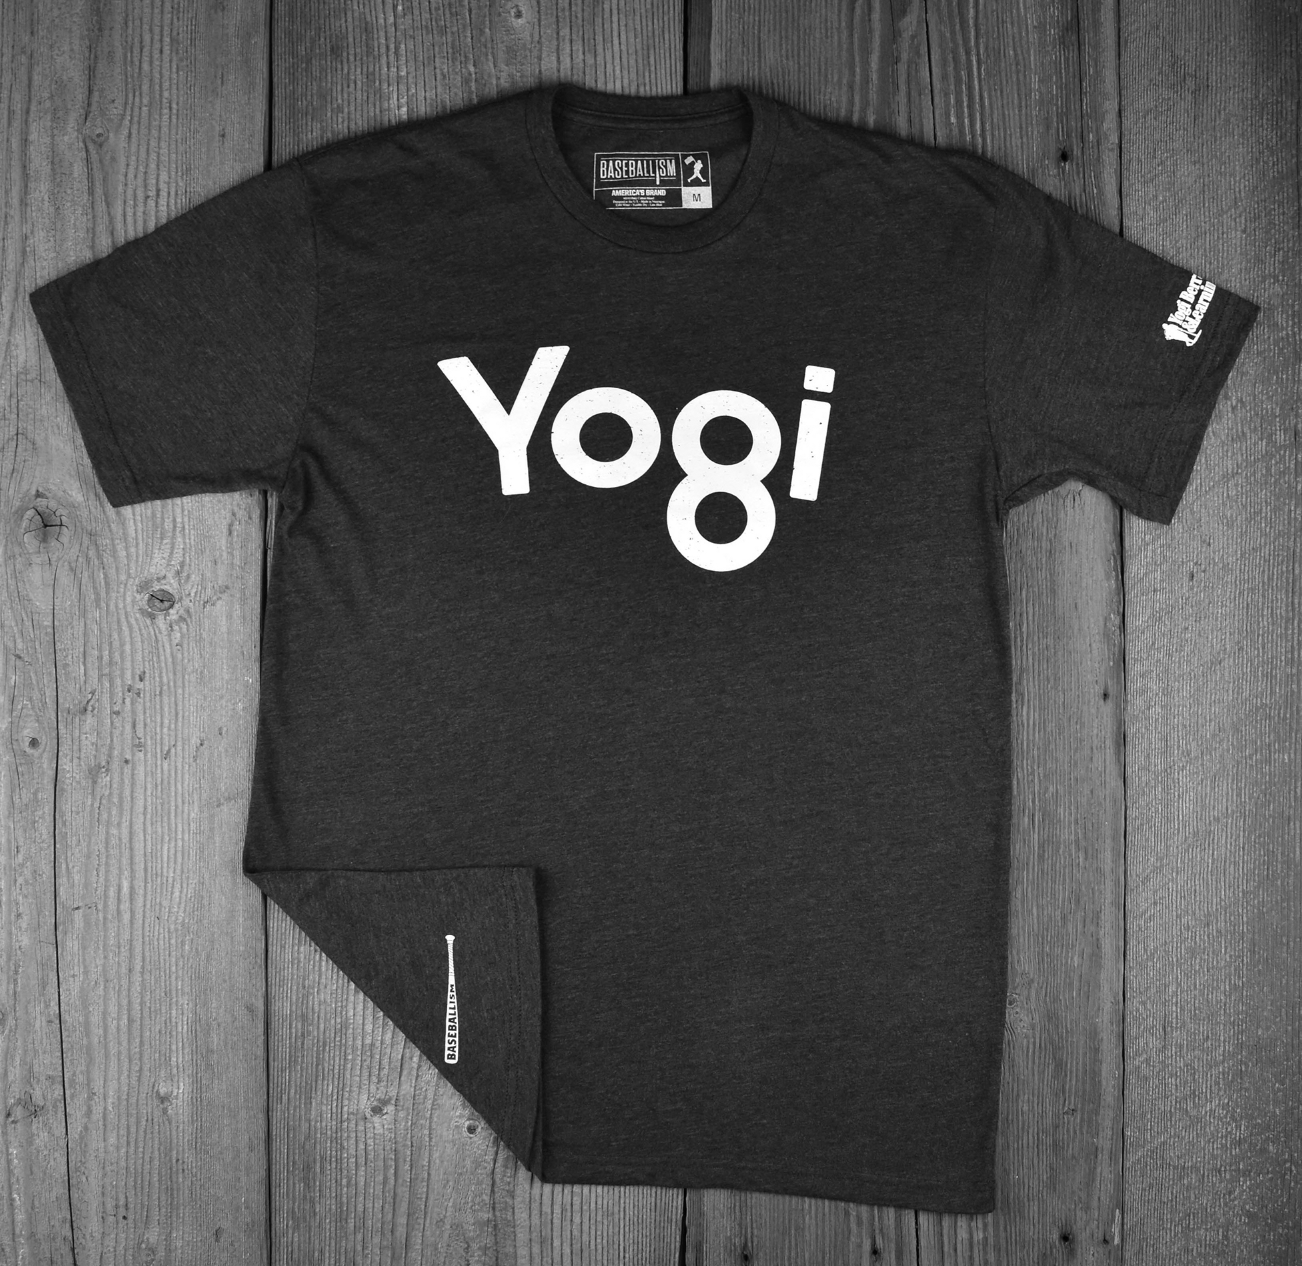 Yogi tshirt black